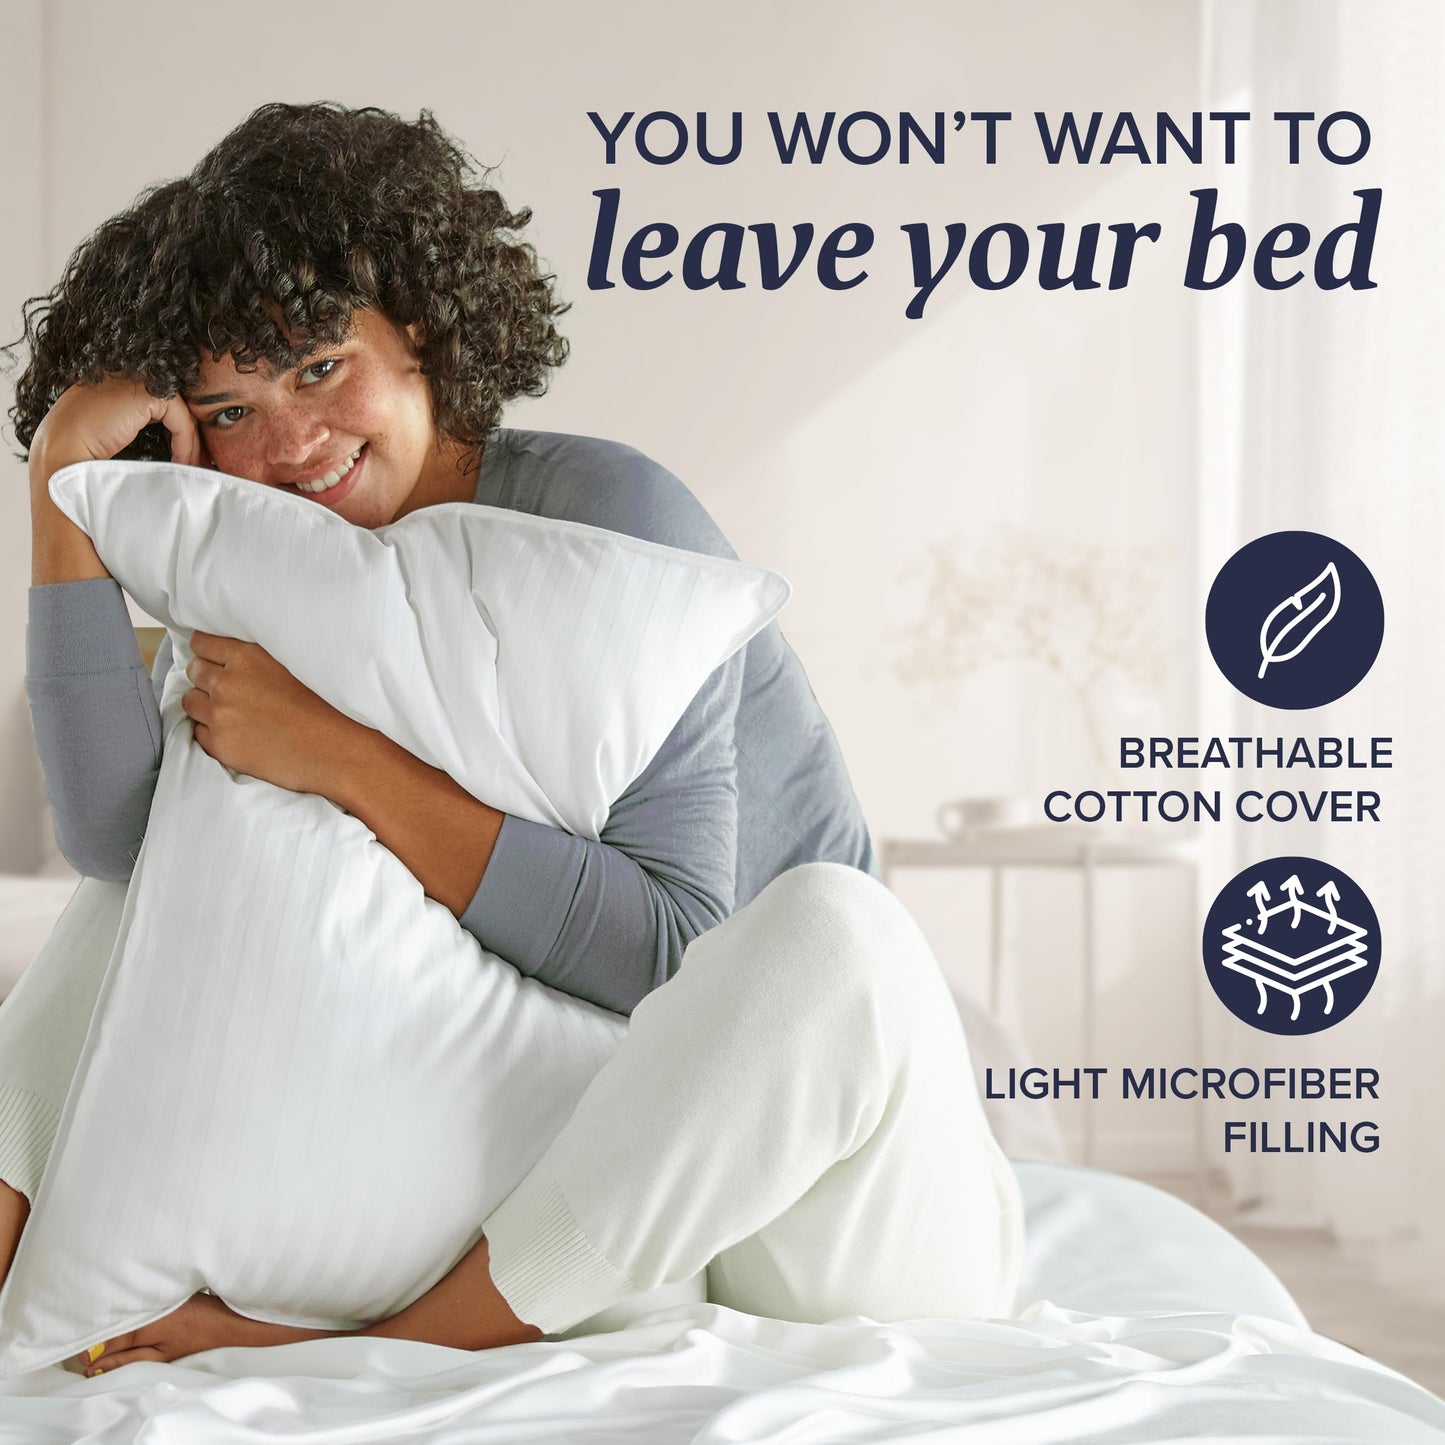 Beckham Hotel Bed Pillows